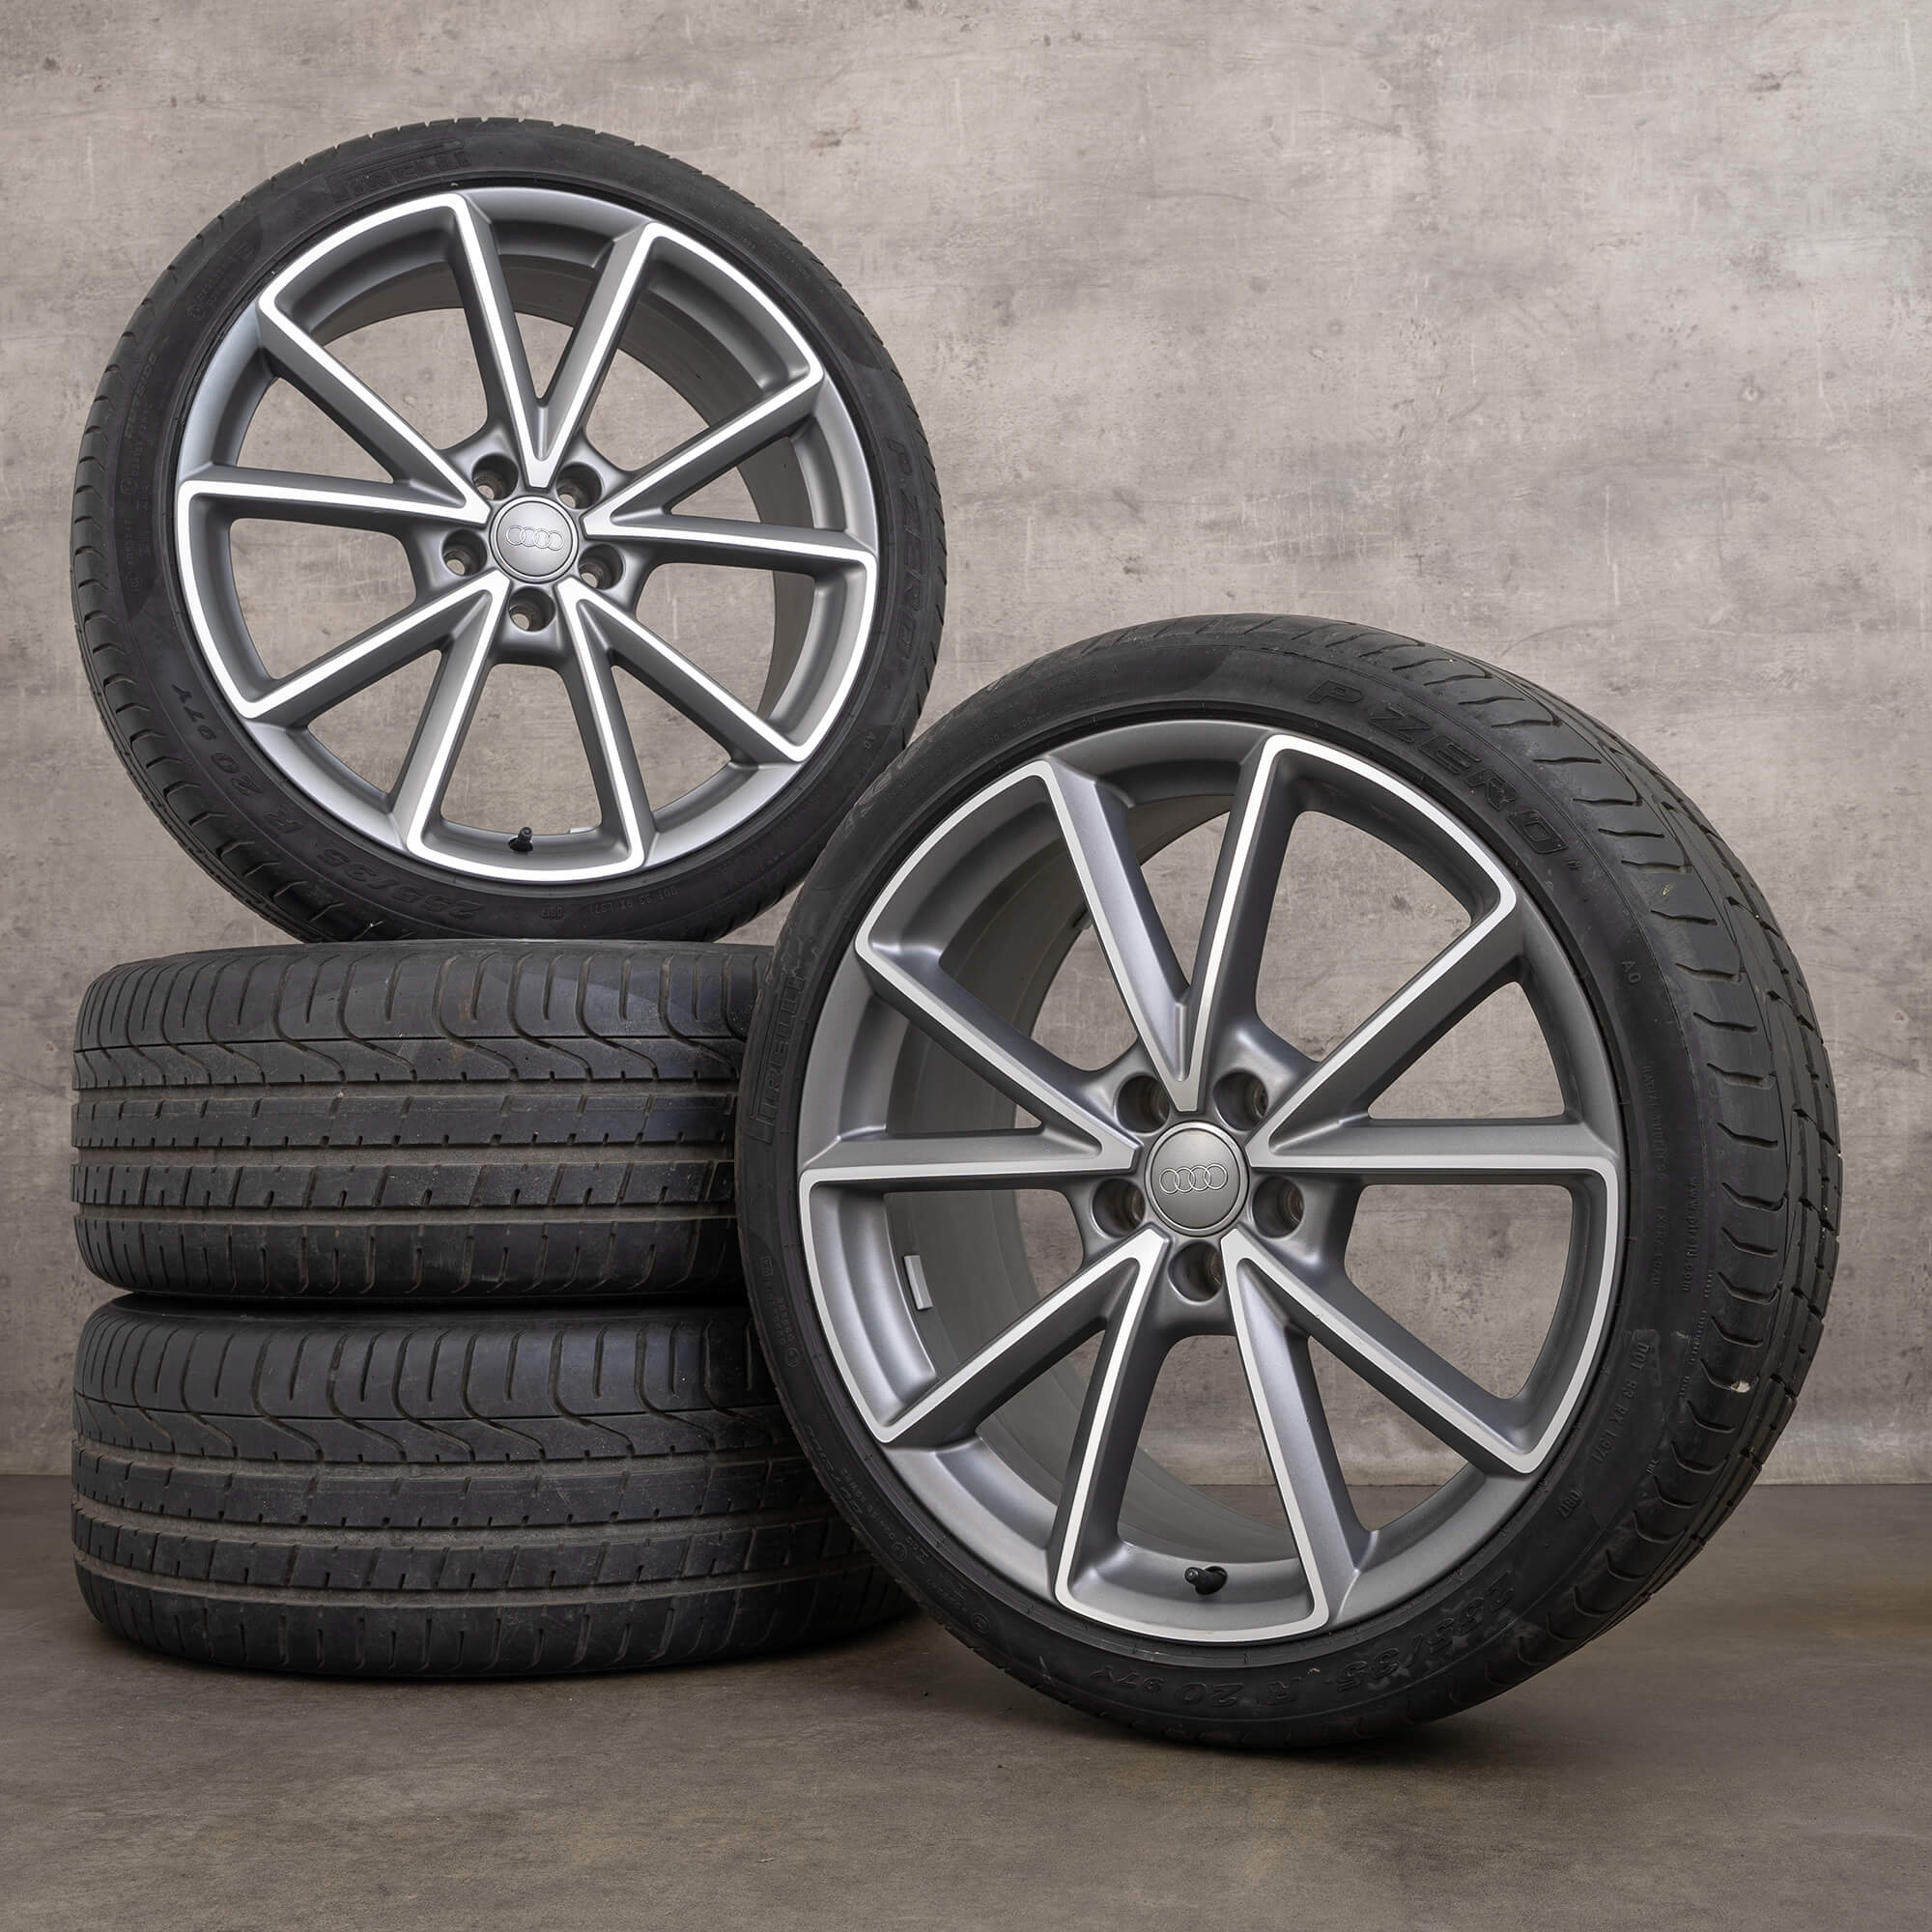 Jantes de pneus verão originais Audi Q3 RSQ3 8U 20 polegadas 8U0601025AK